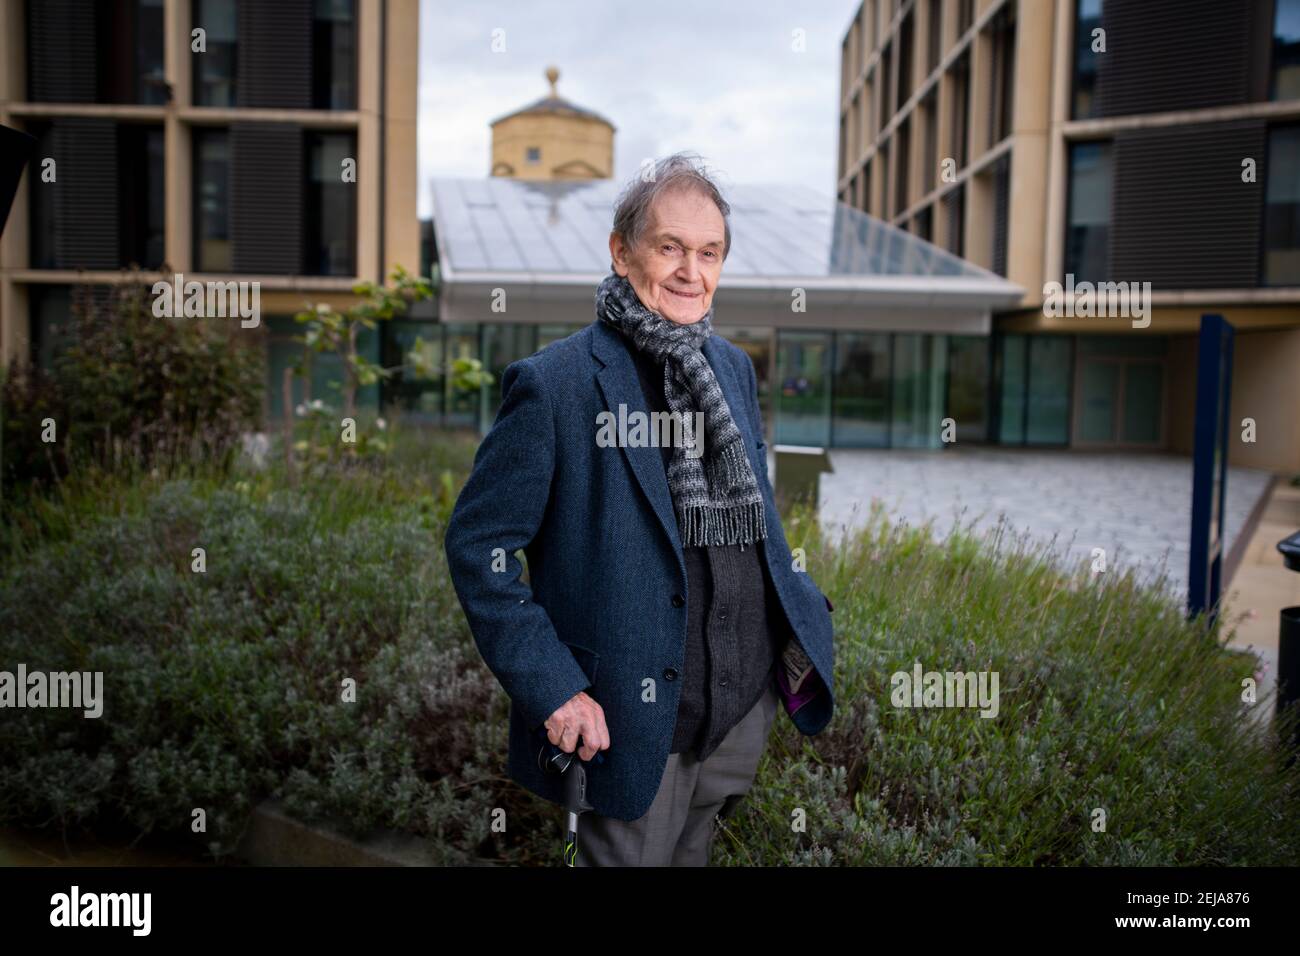 Sir Roger Penrose, Professore emerito presso l'Istituto Matematico dell'Università di Oxford. Gli è stato conferito il Premio Nobel per la fisica. Foto Stock